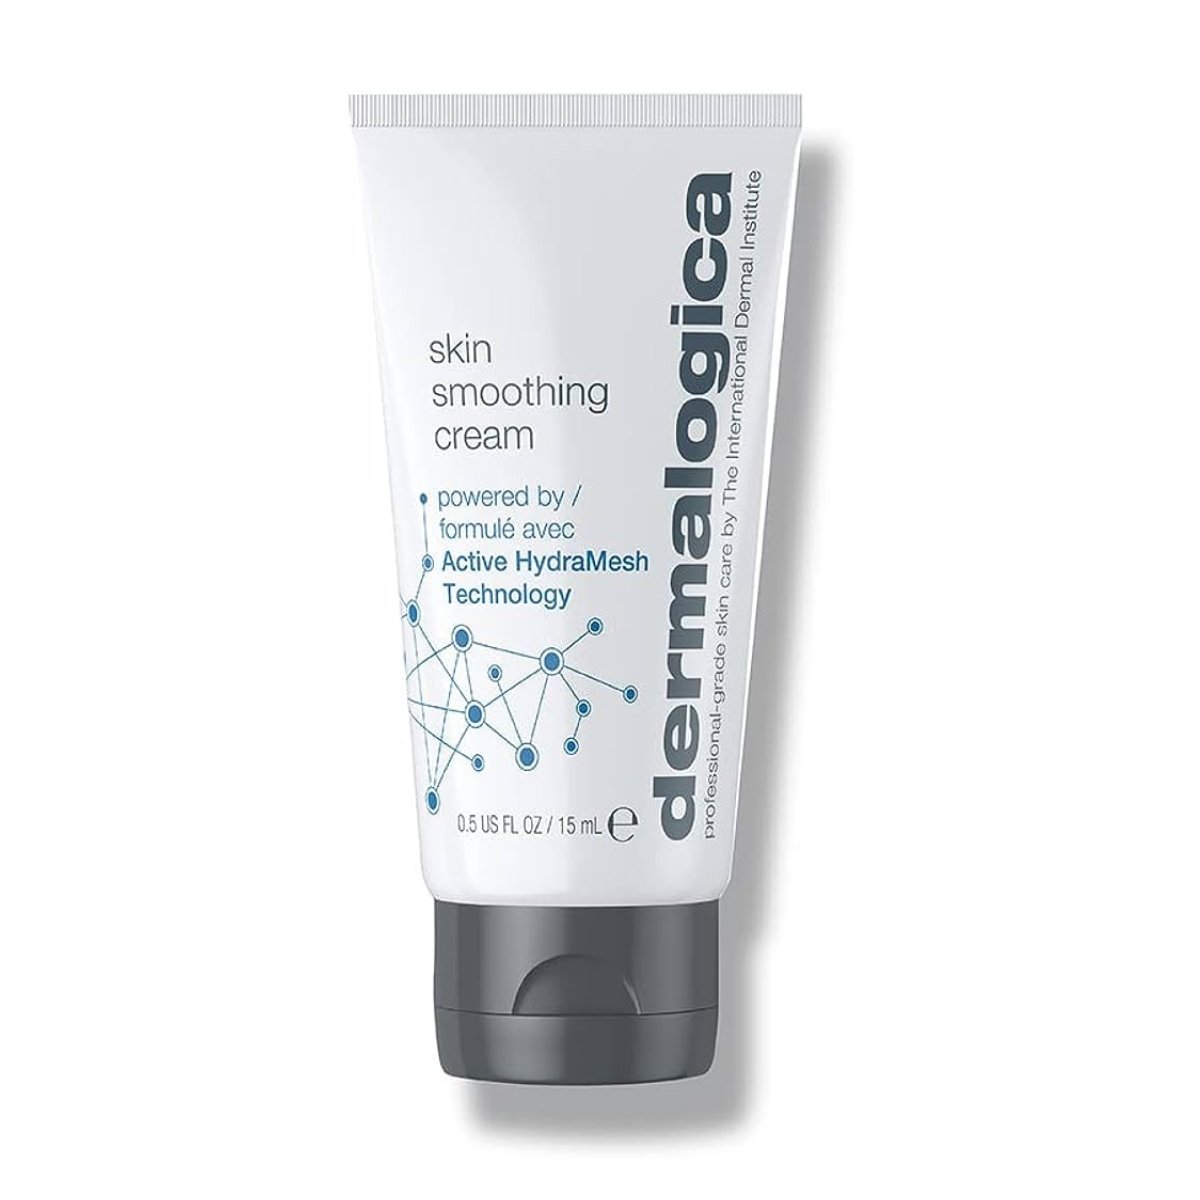 Dermalogica Skin Smoothing Cream - SkincareEssentials